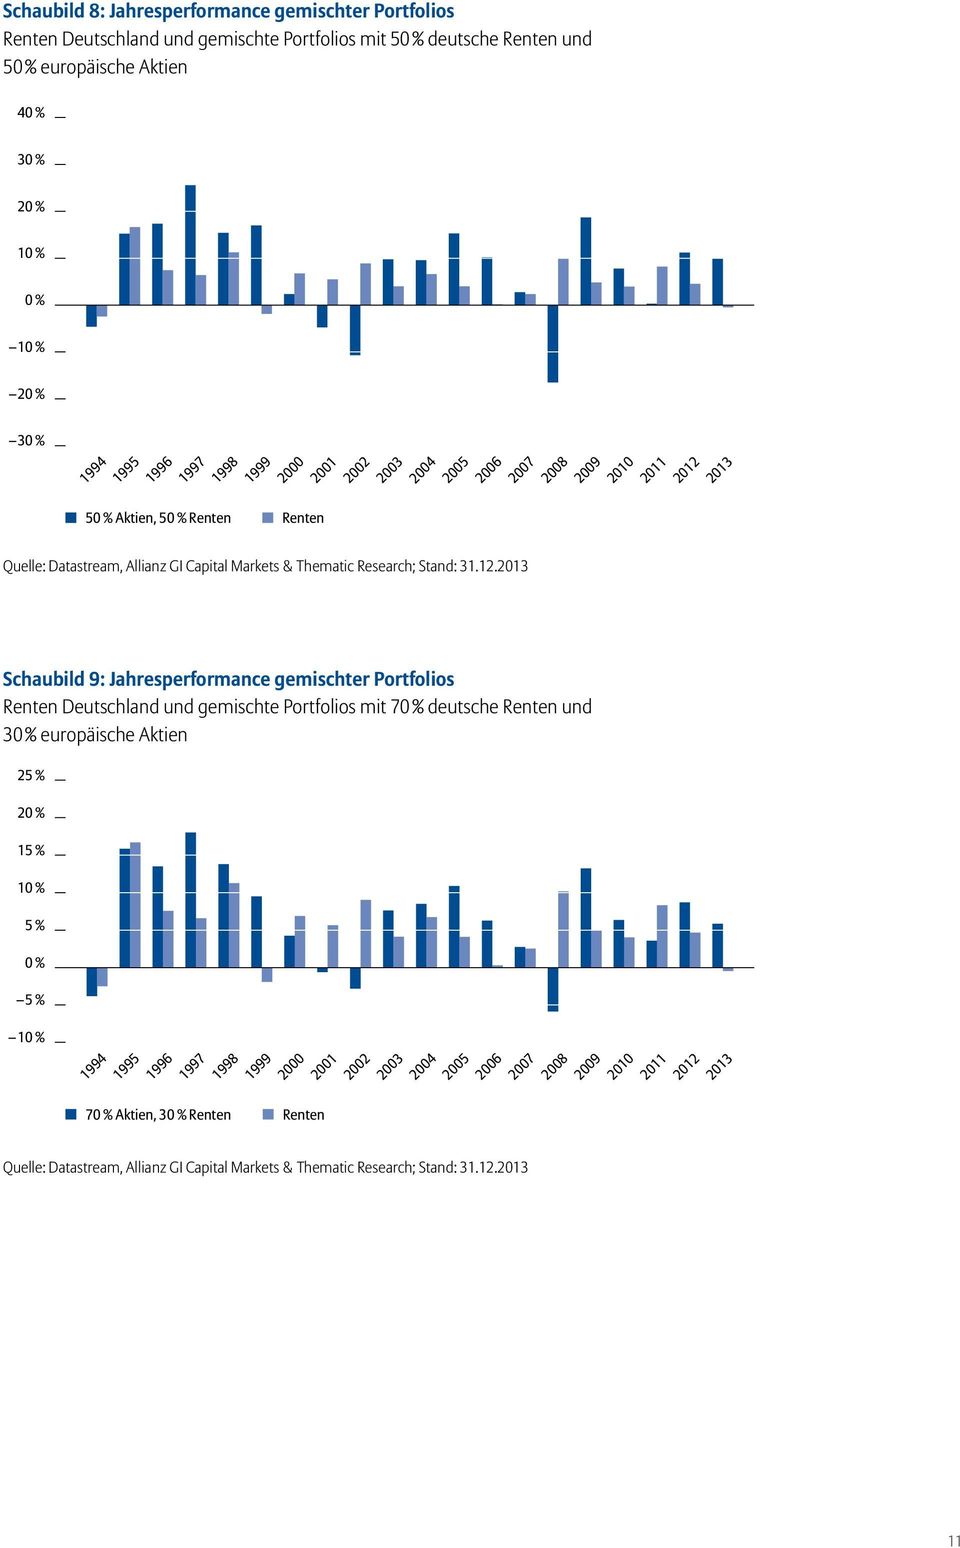 Schaubild 9: Jahresperformance gemischter Portfolios Renten Deutschland und gemischte Portfolios mit 7 deutsche Renten und 3 europäische Aktien